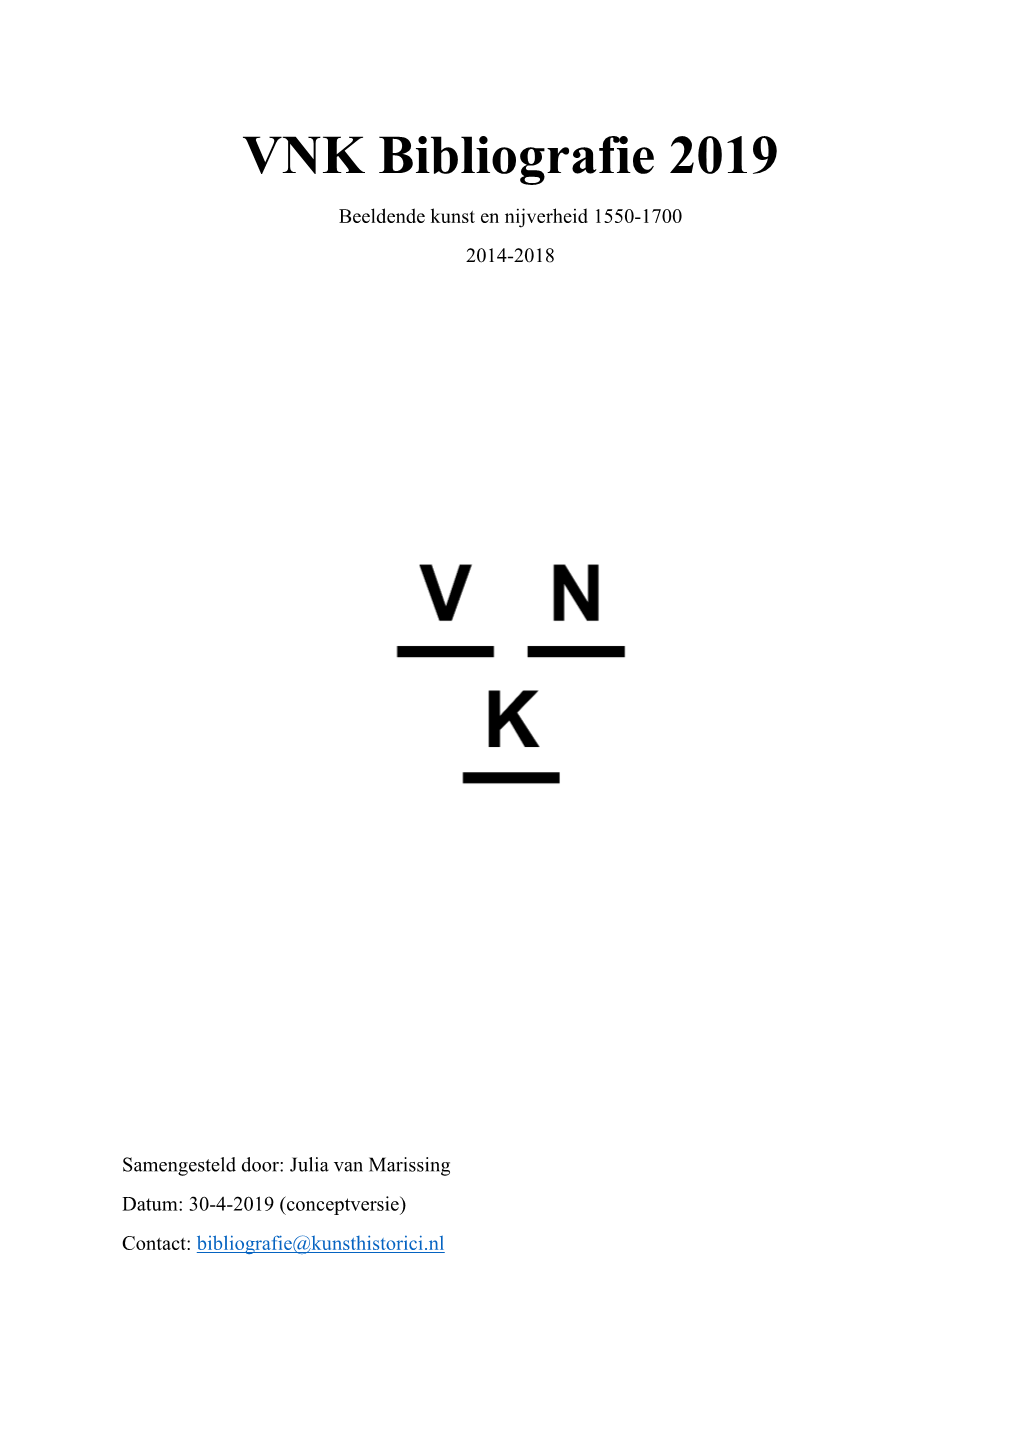 Bekijk De VNK-Bibliografie 2019